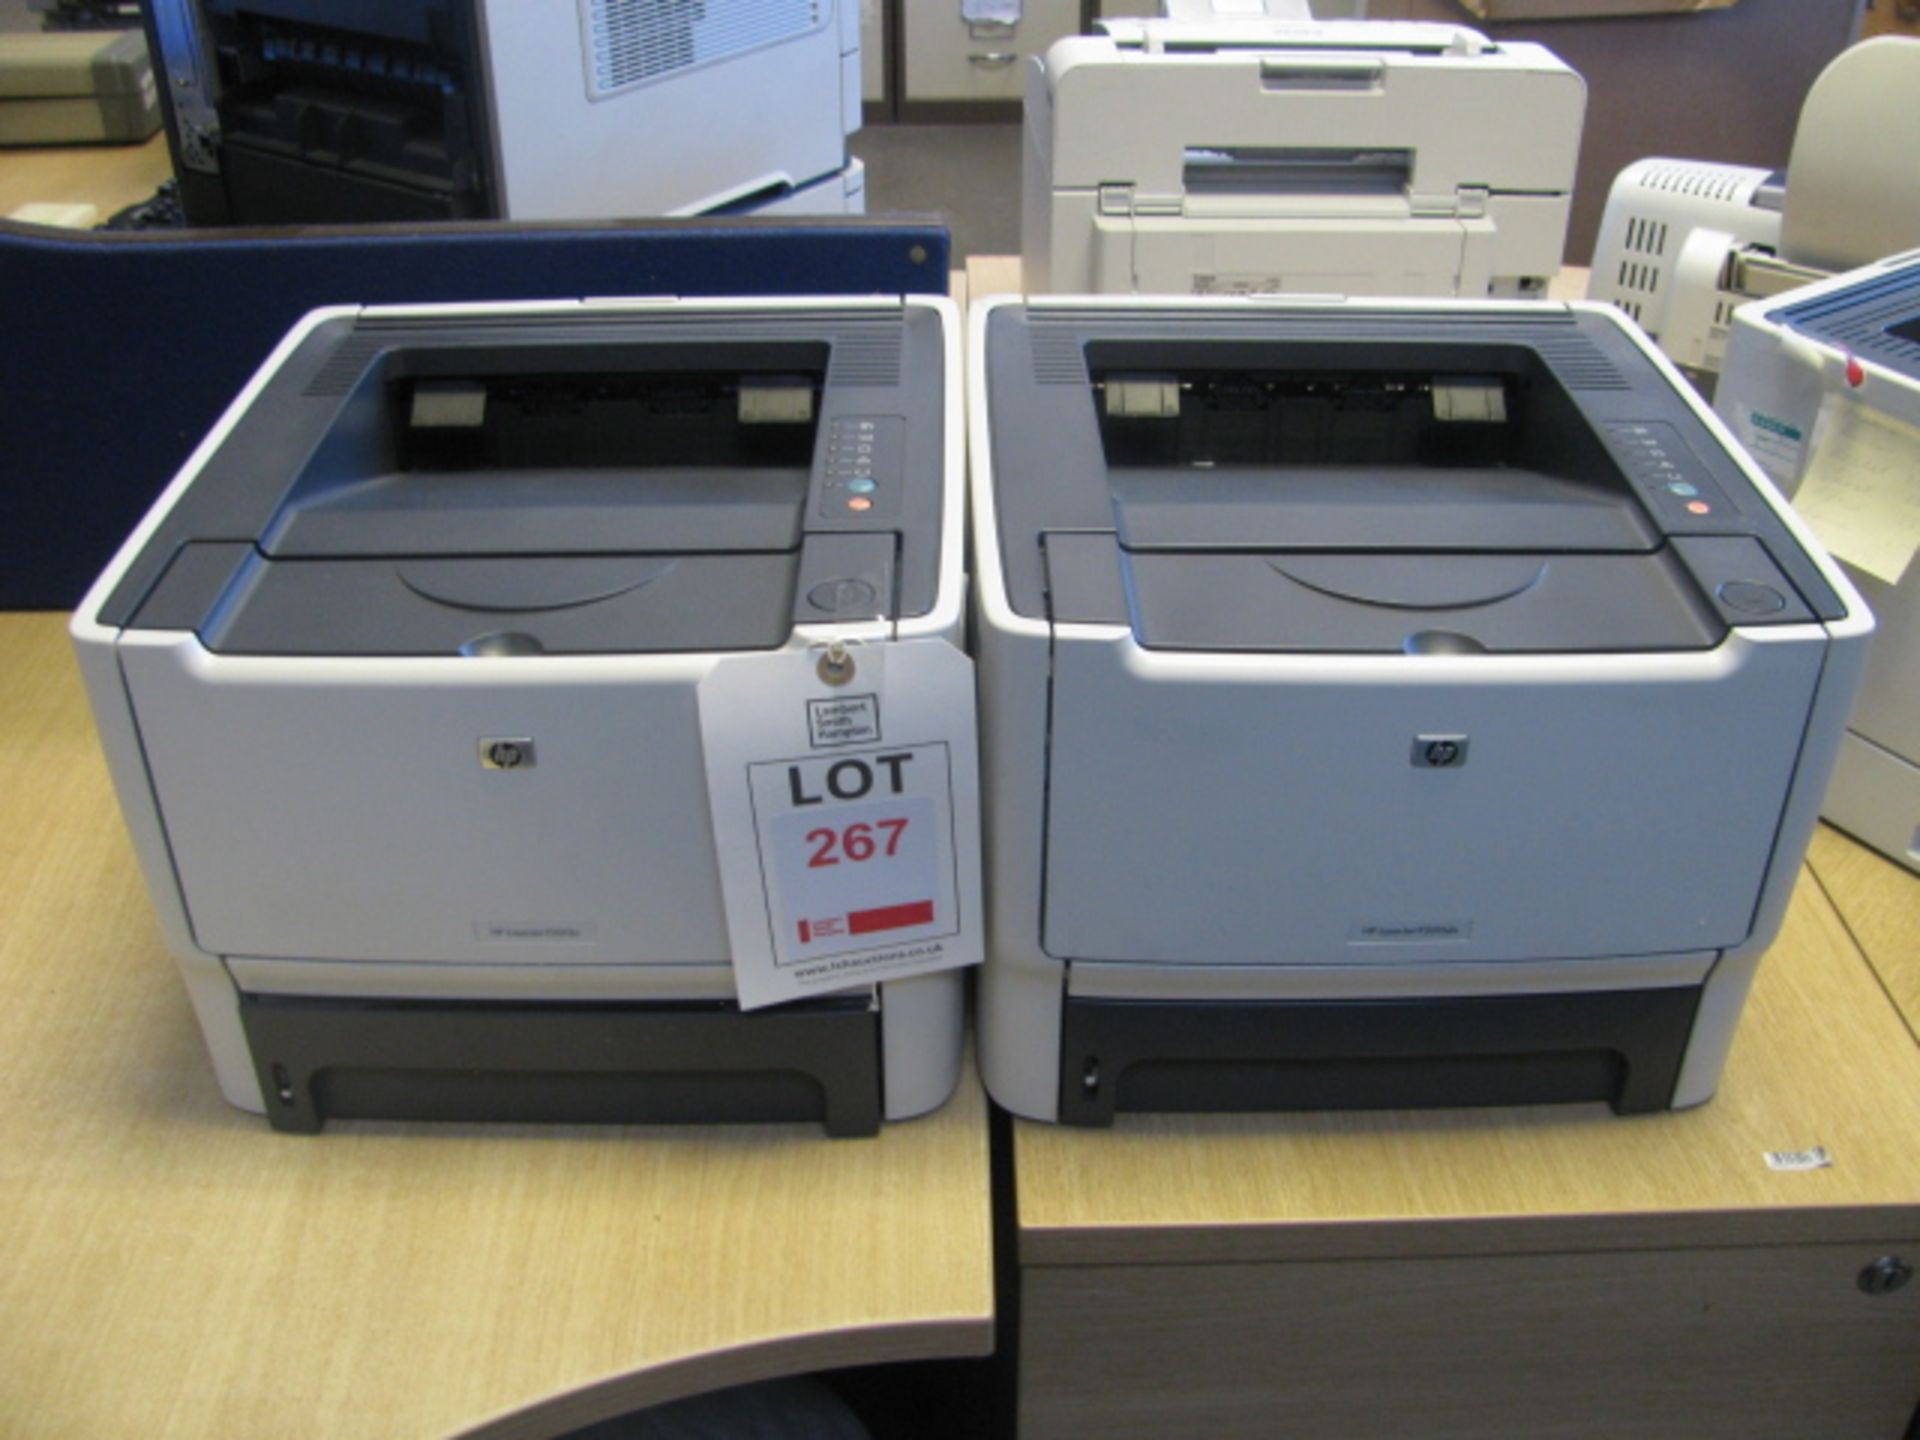 Two Hewlett Packard Laserjet P2015dn printers